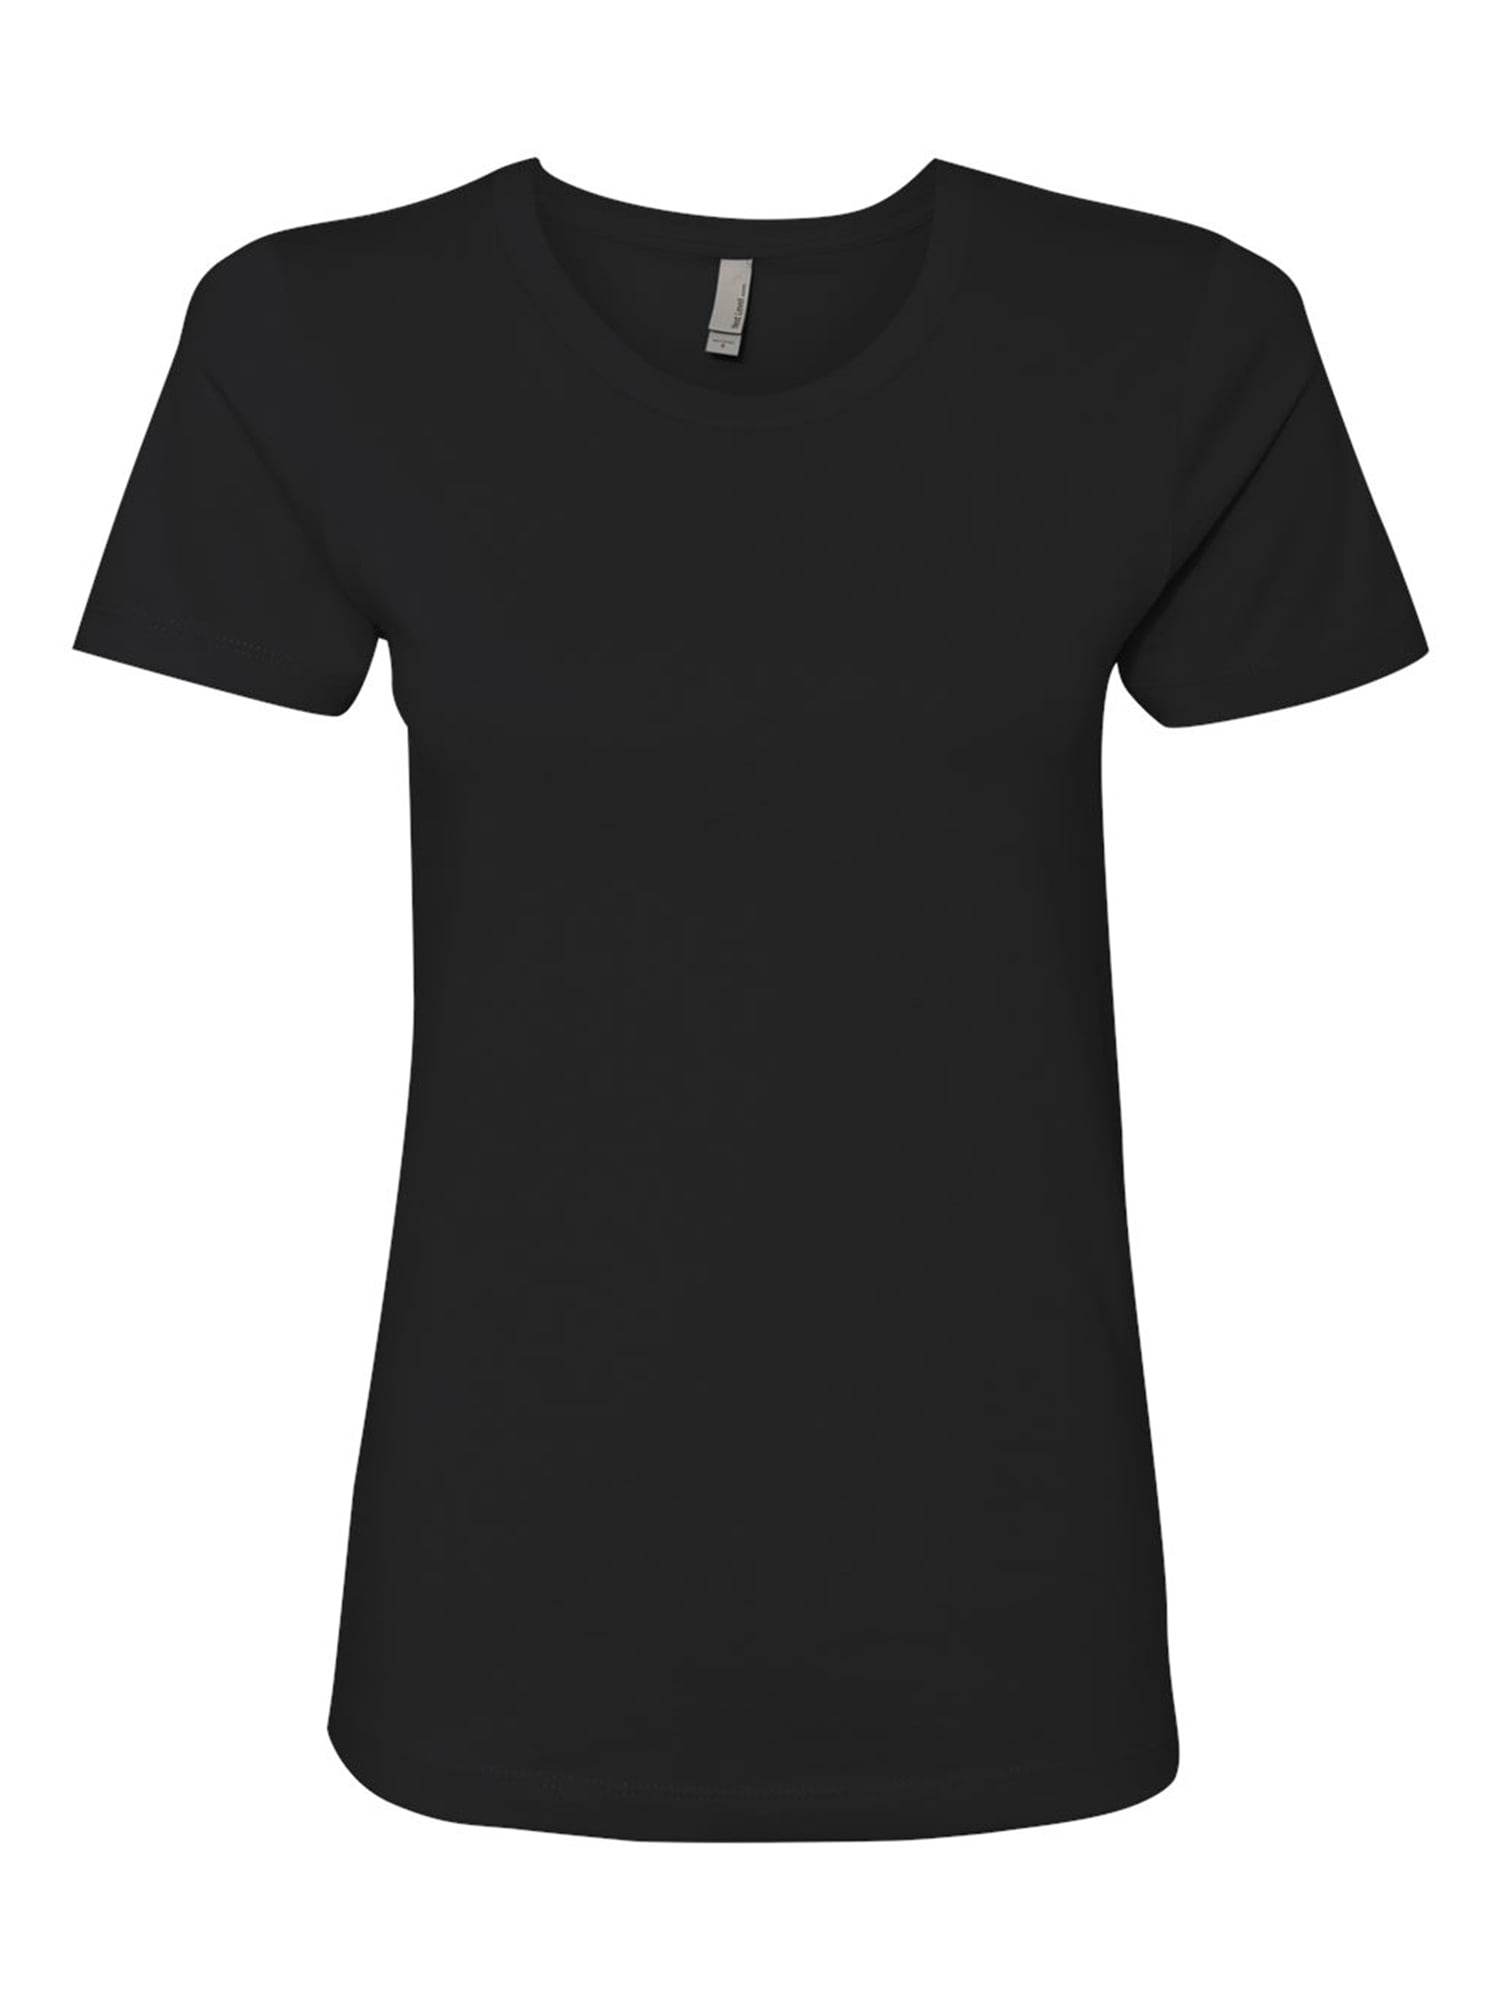 Next Level - Plain T Shirt for Women - Short Sleeve Women Shirts ...